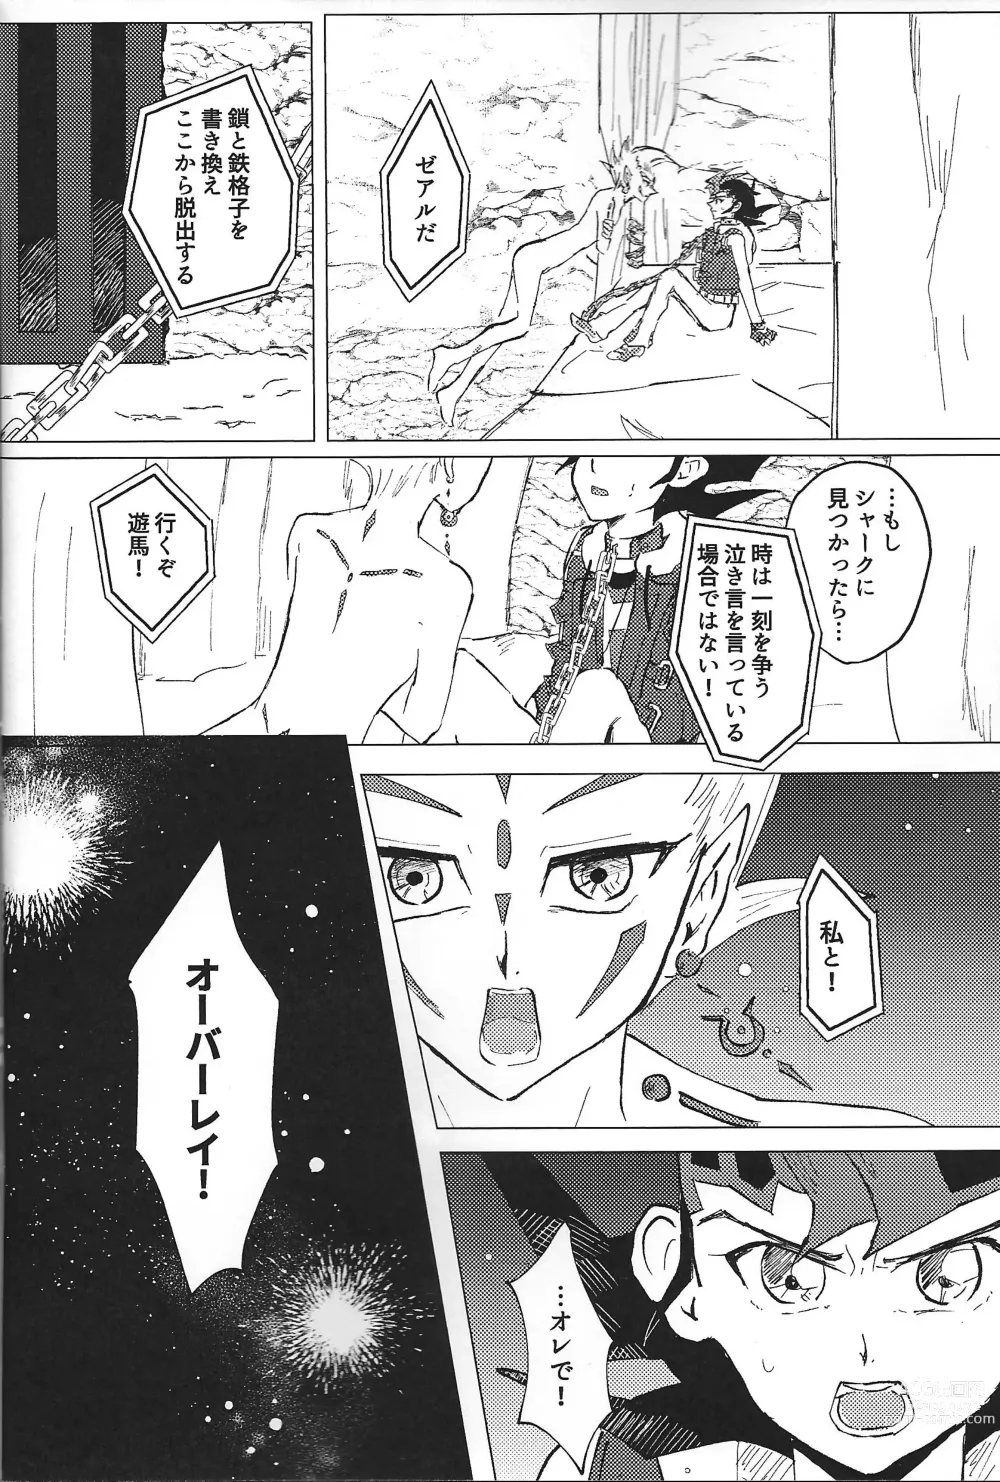 Page 24 of doujinshi ChaosPhantasma